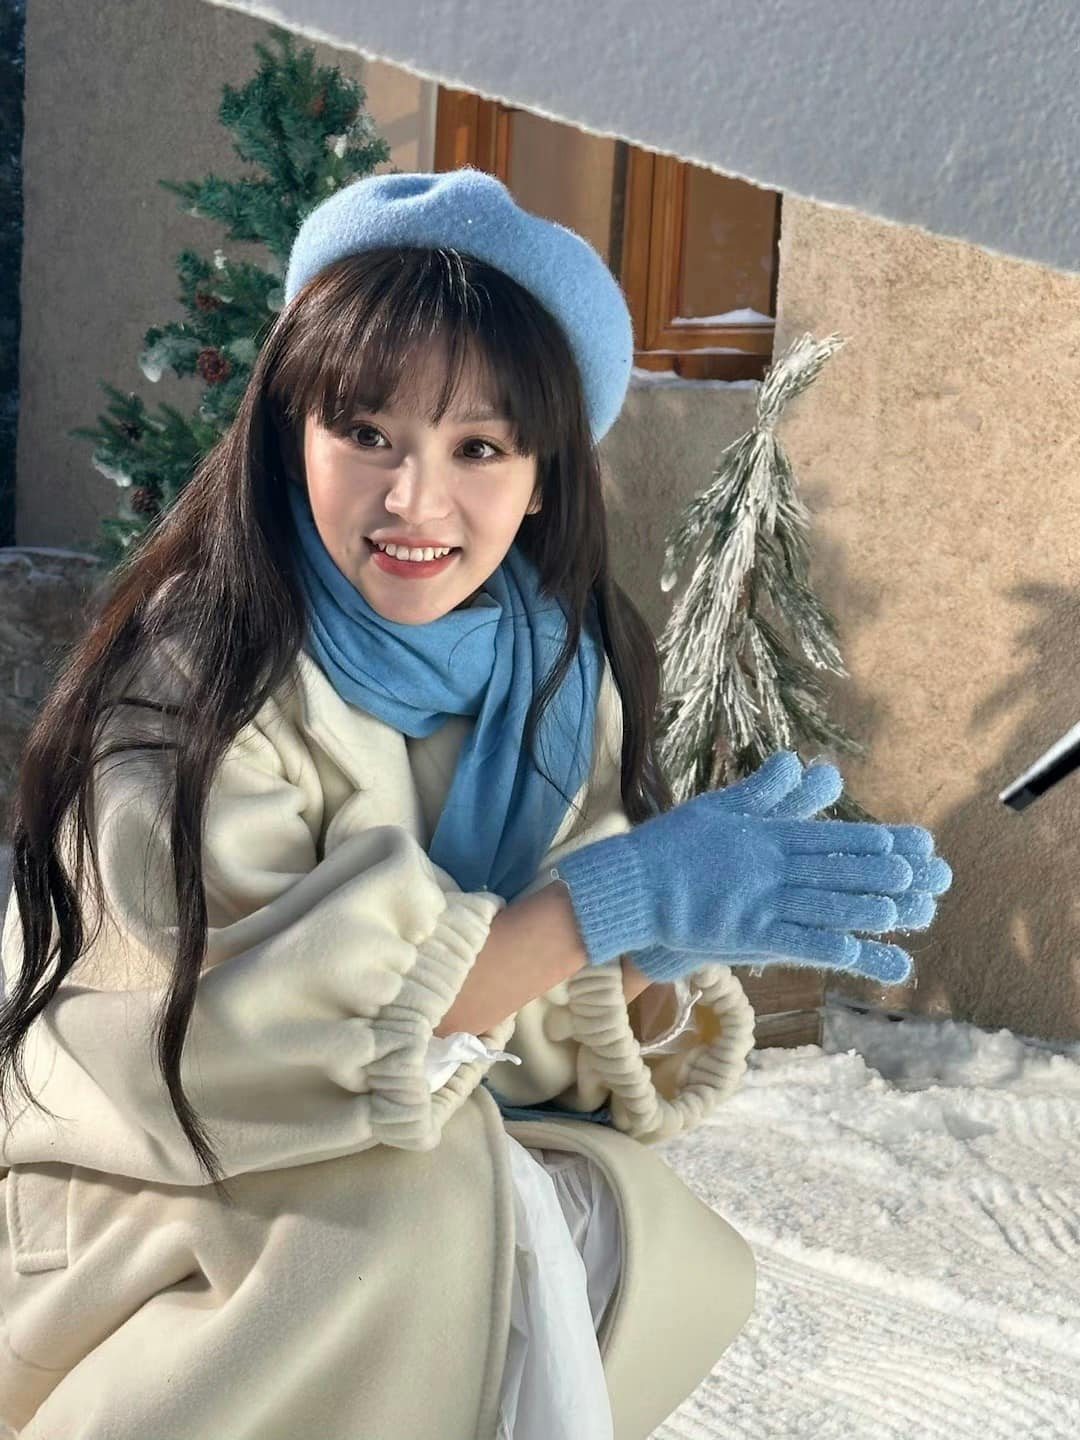 Điền Hi Vi hóa 'cô bé mùa đông' trong bộ ảnh mới, nhan sắc được netizen hết lời khen ngợi  - Ảnh 8